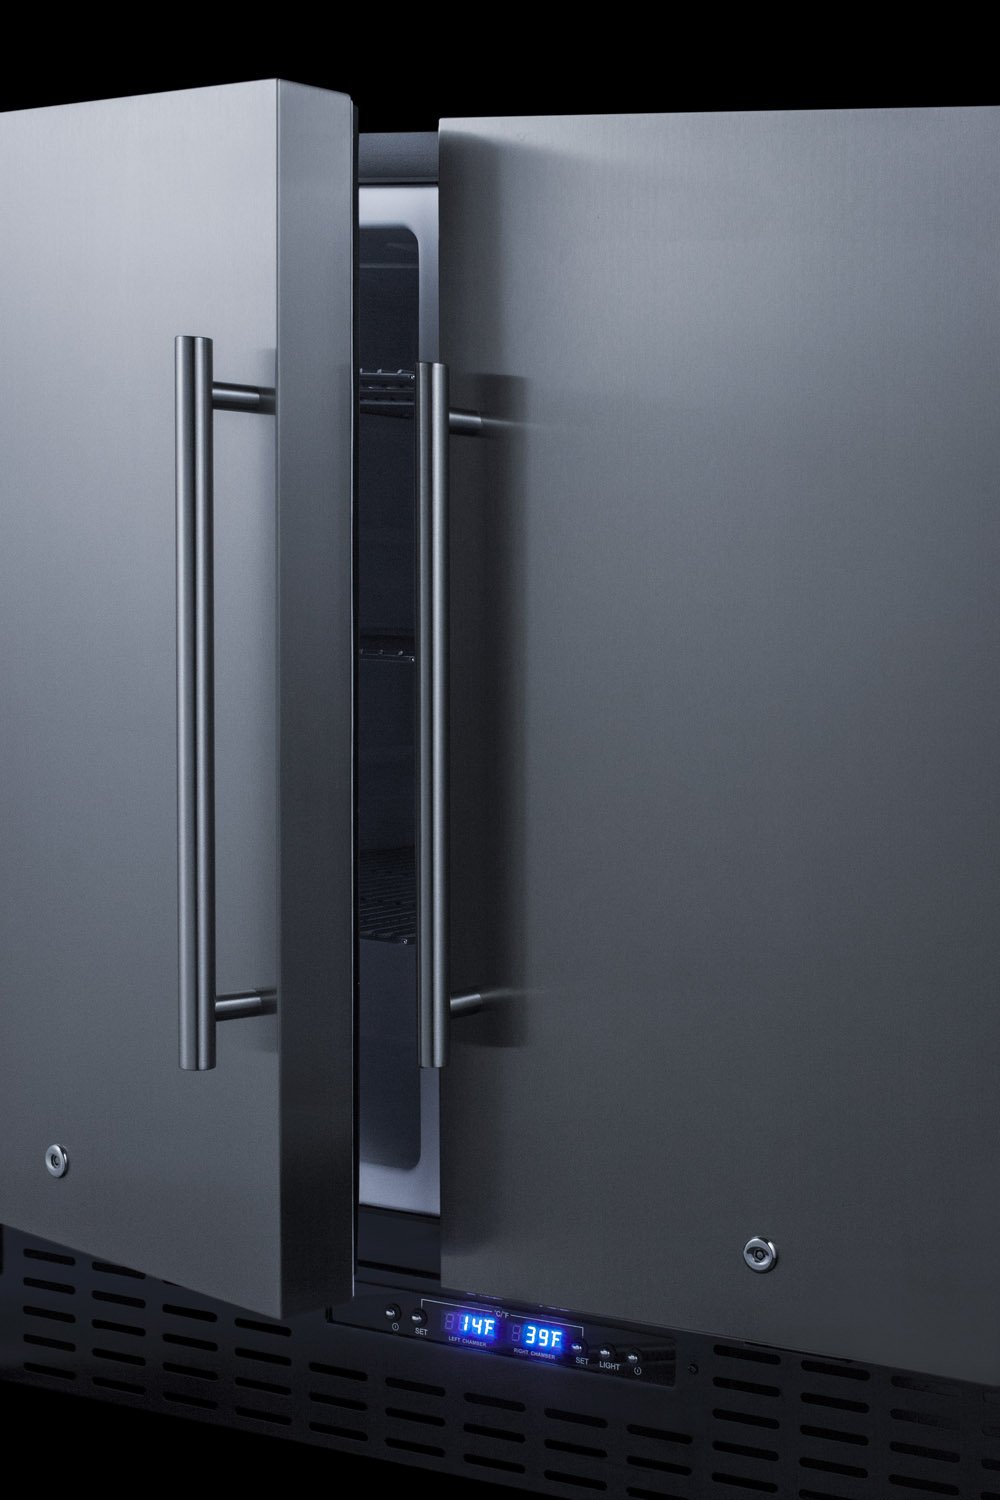 SUMMIT 36" Wide Built-In Refrigerator-Freezer